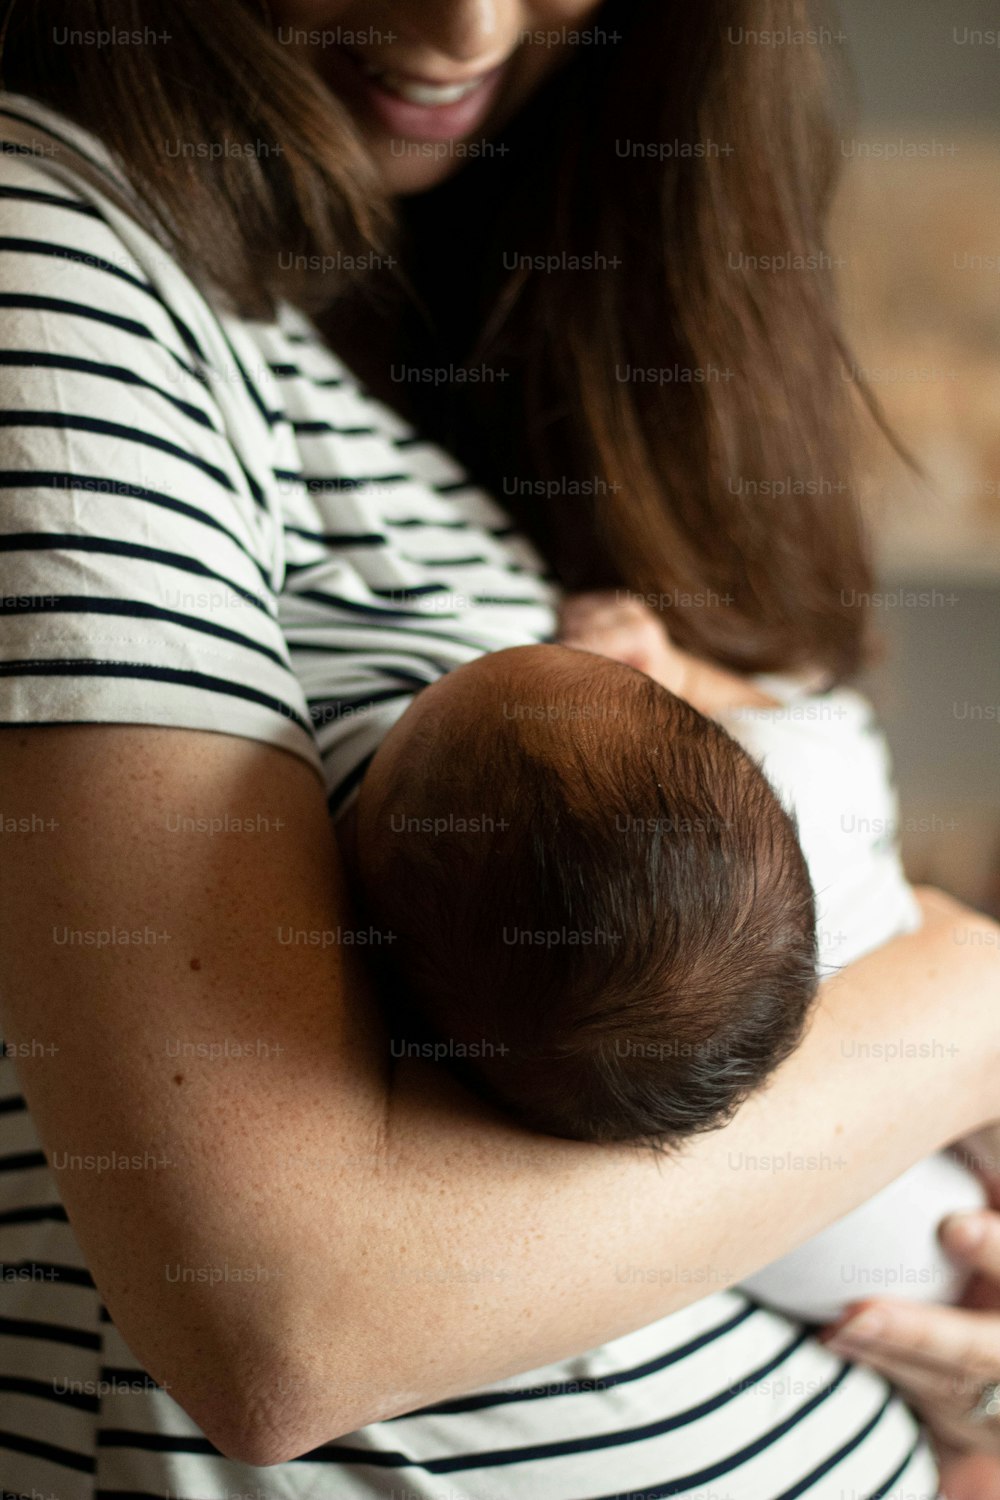 赤ん坊を腕に抱く女性